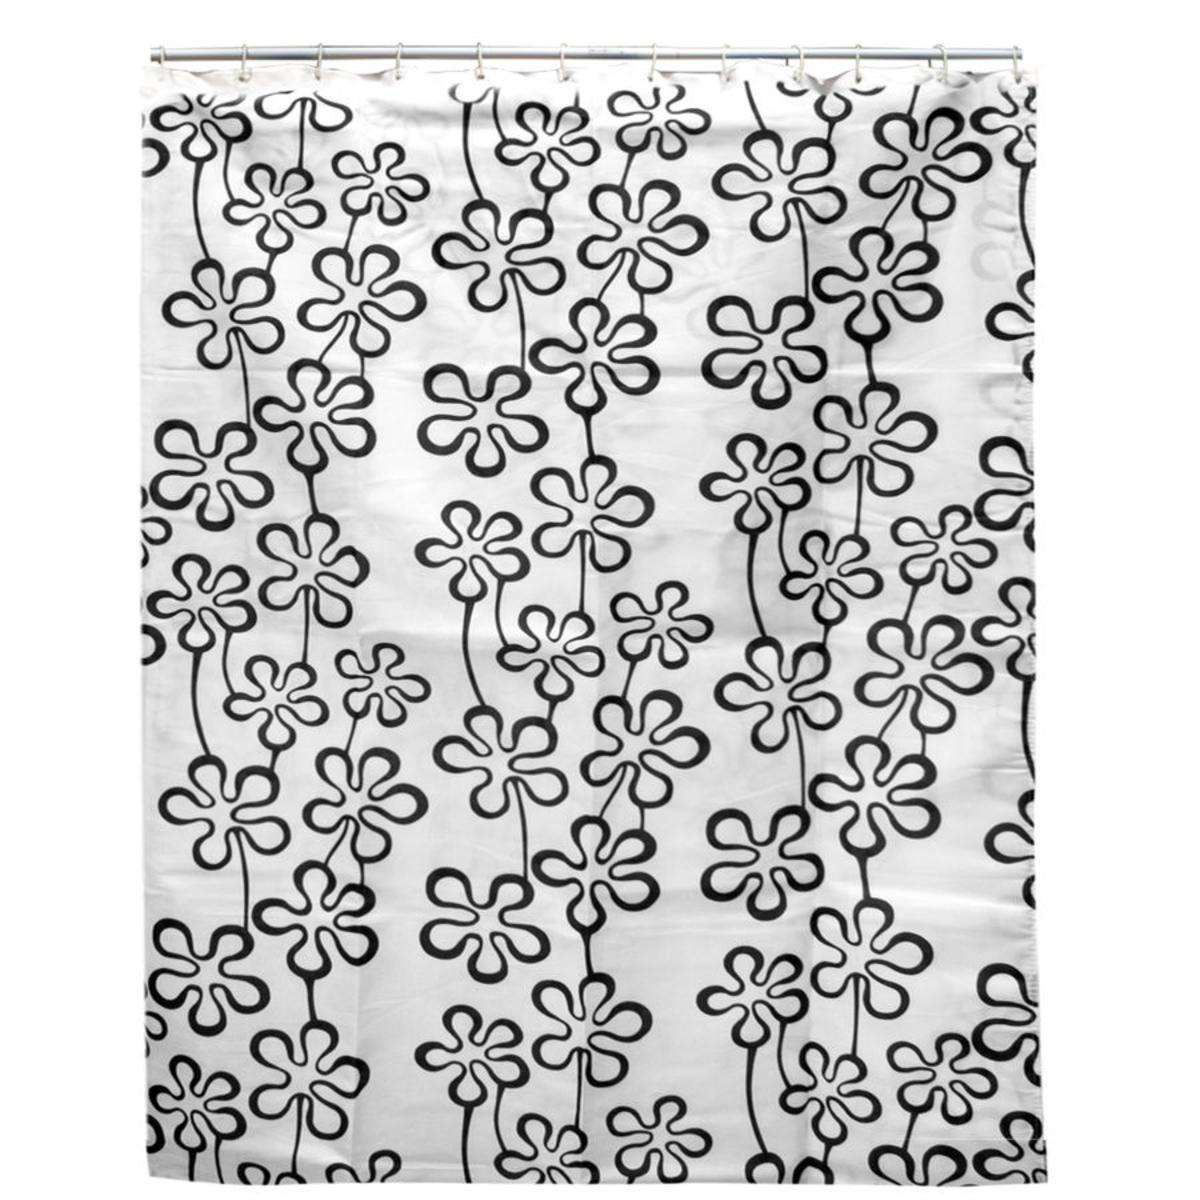 Rideau de douche fleurs noires en polyester - 180 x 200 cm - Blanc, noir, gris